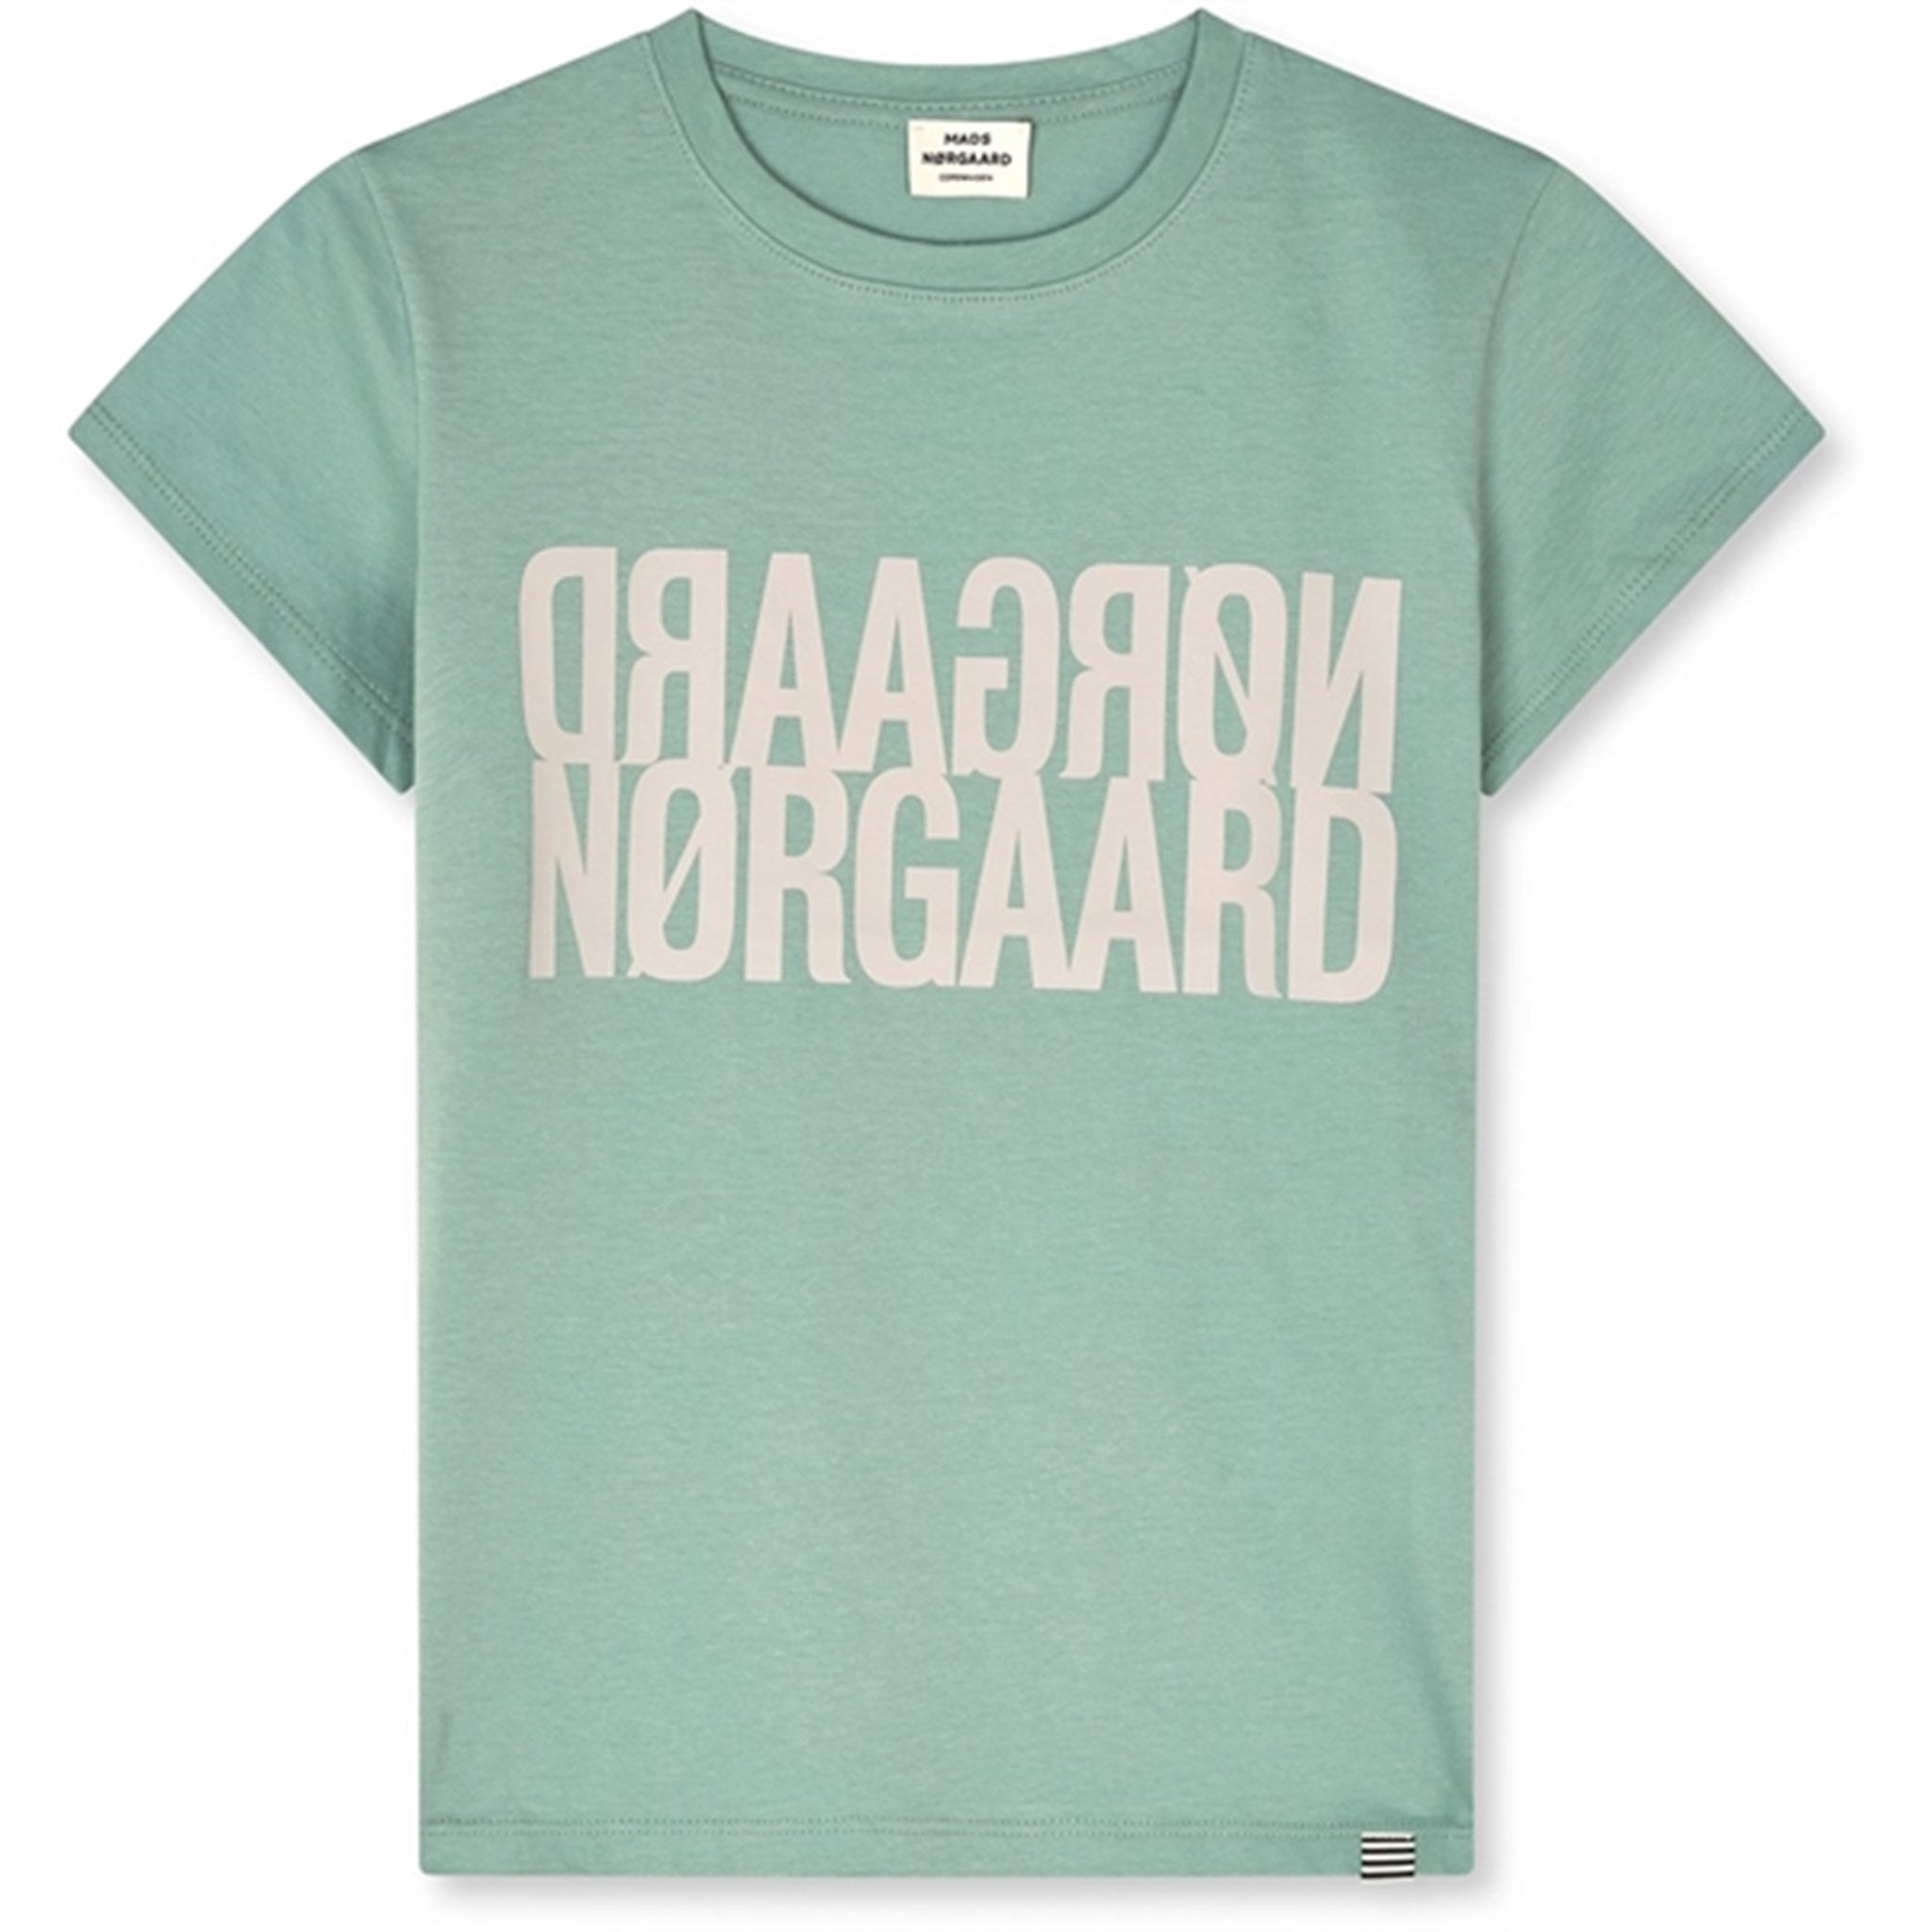 Mads Nørgaard Single Organic Tuvina T-Shirt Jadeite